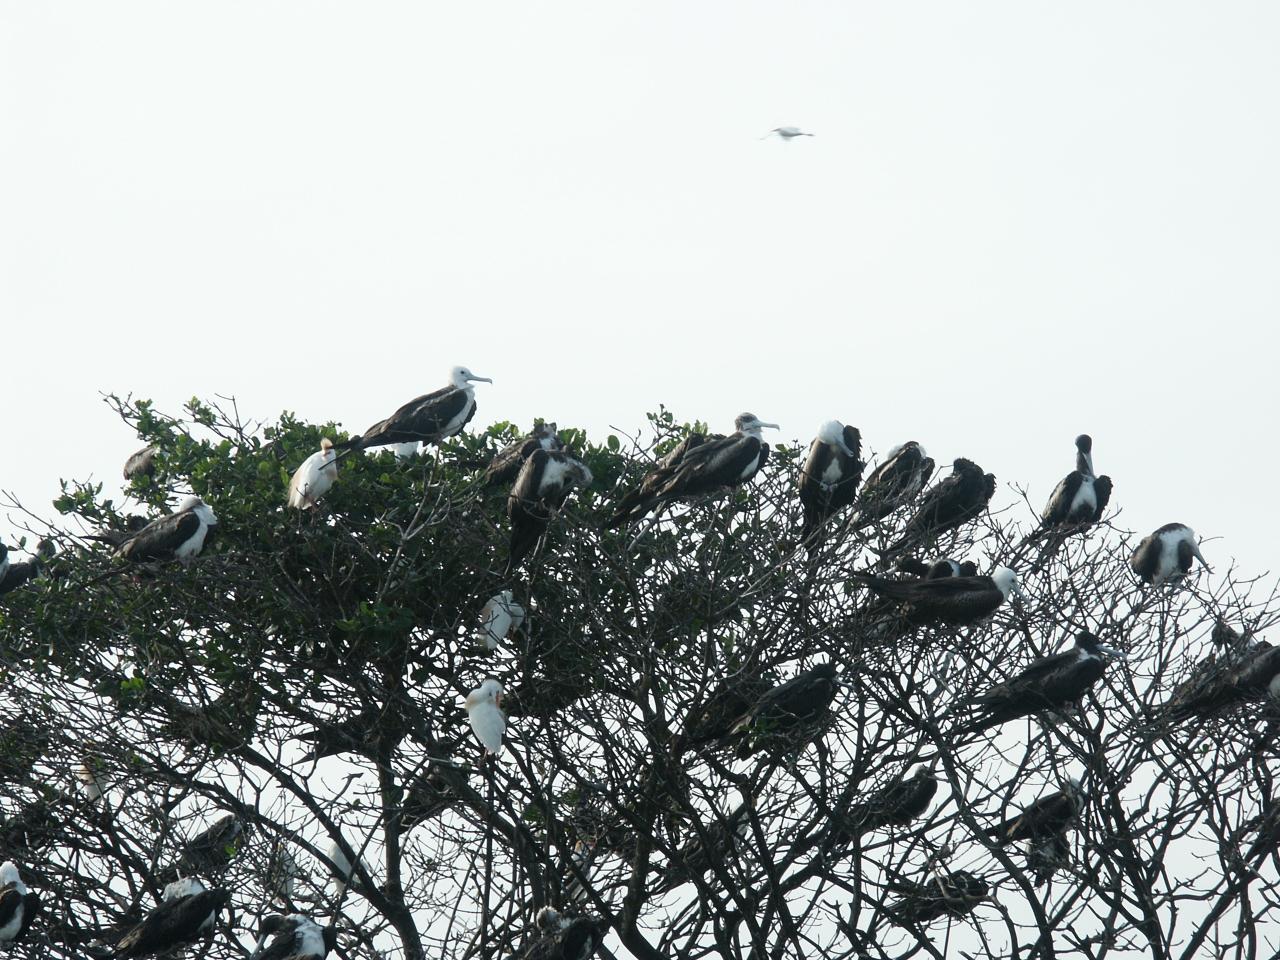 dortoir aux oiseaux dans la mangrove